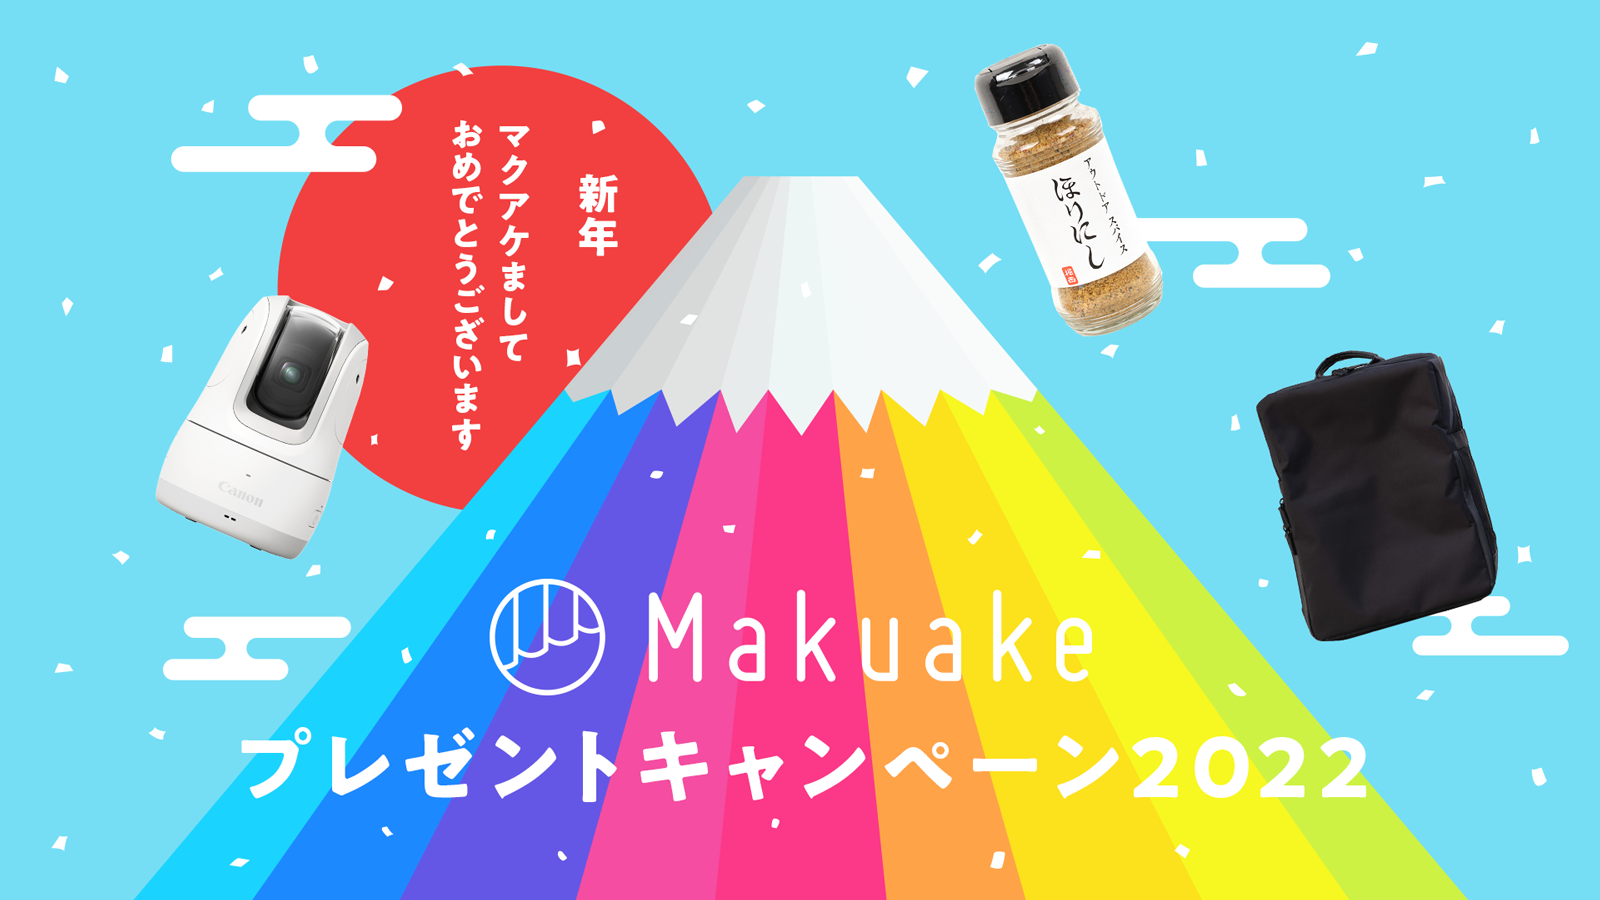 アタラシイものや体験の応援購入サービス「Makuake」、「新年マクアケ